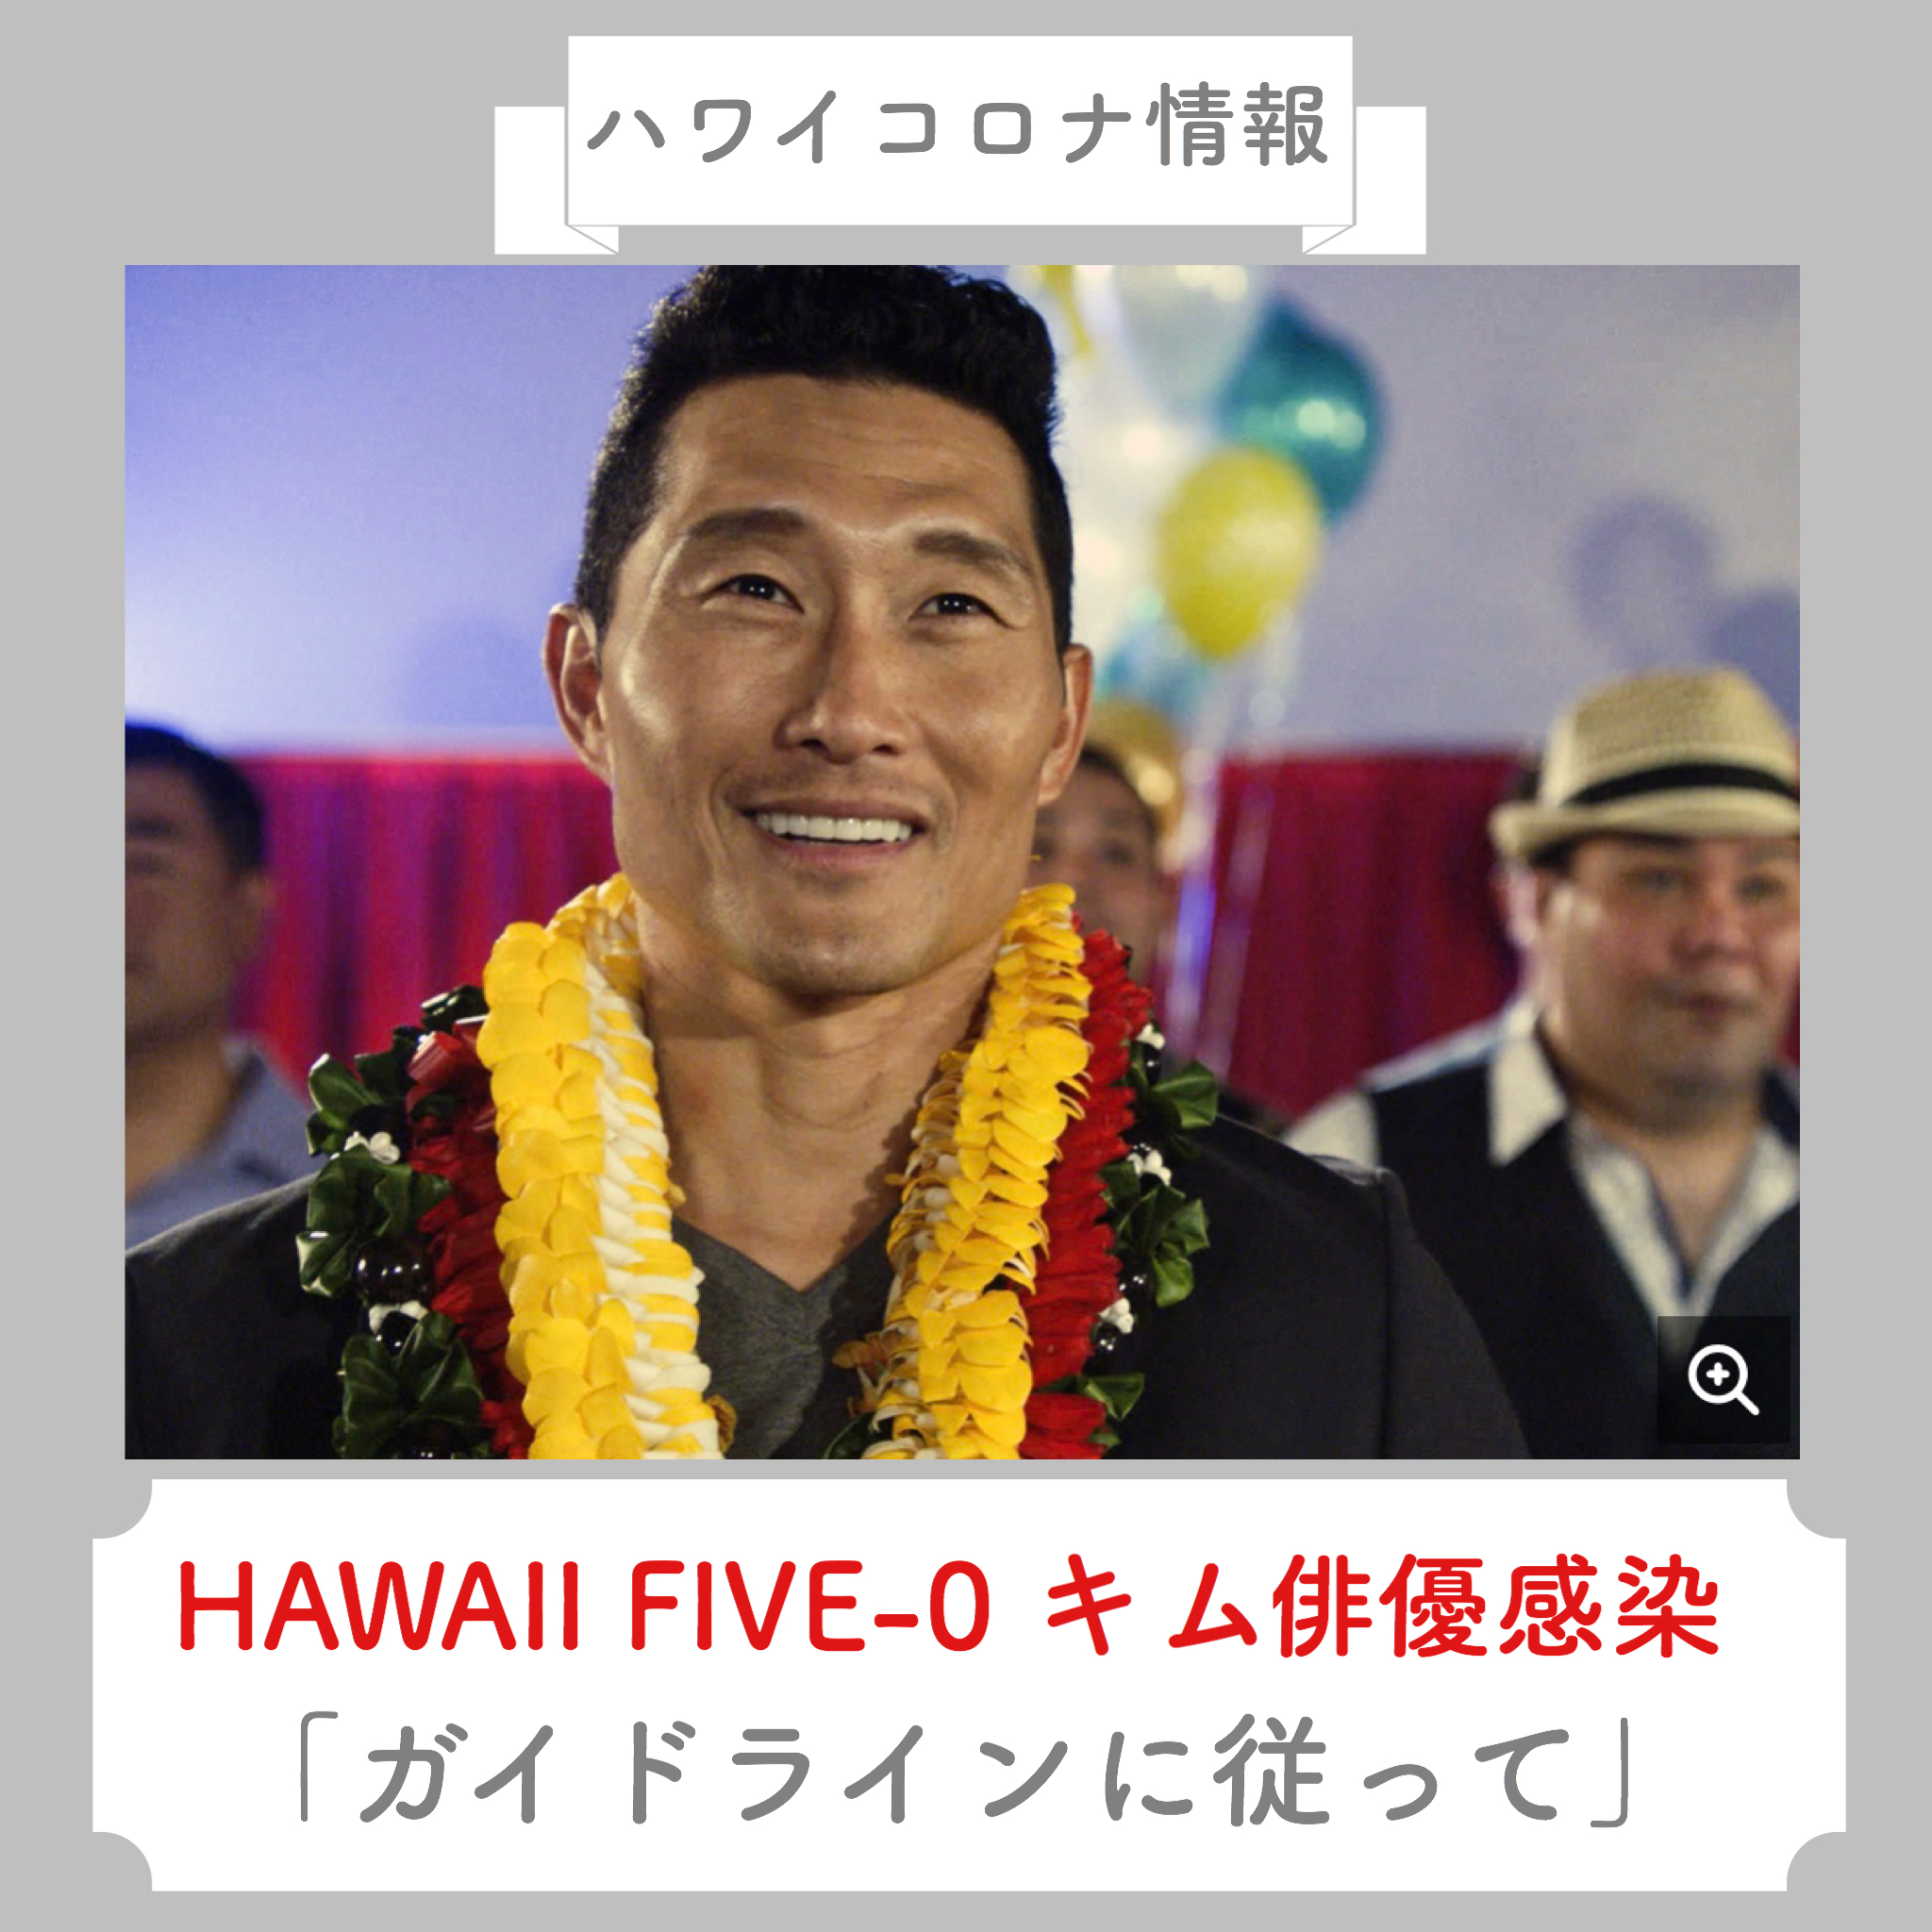 【ハワイコロナ情報】HAWAII FIVE-0人気俳優ダニエル・キム氏感染「全ての人の為にガイドラインに従って」